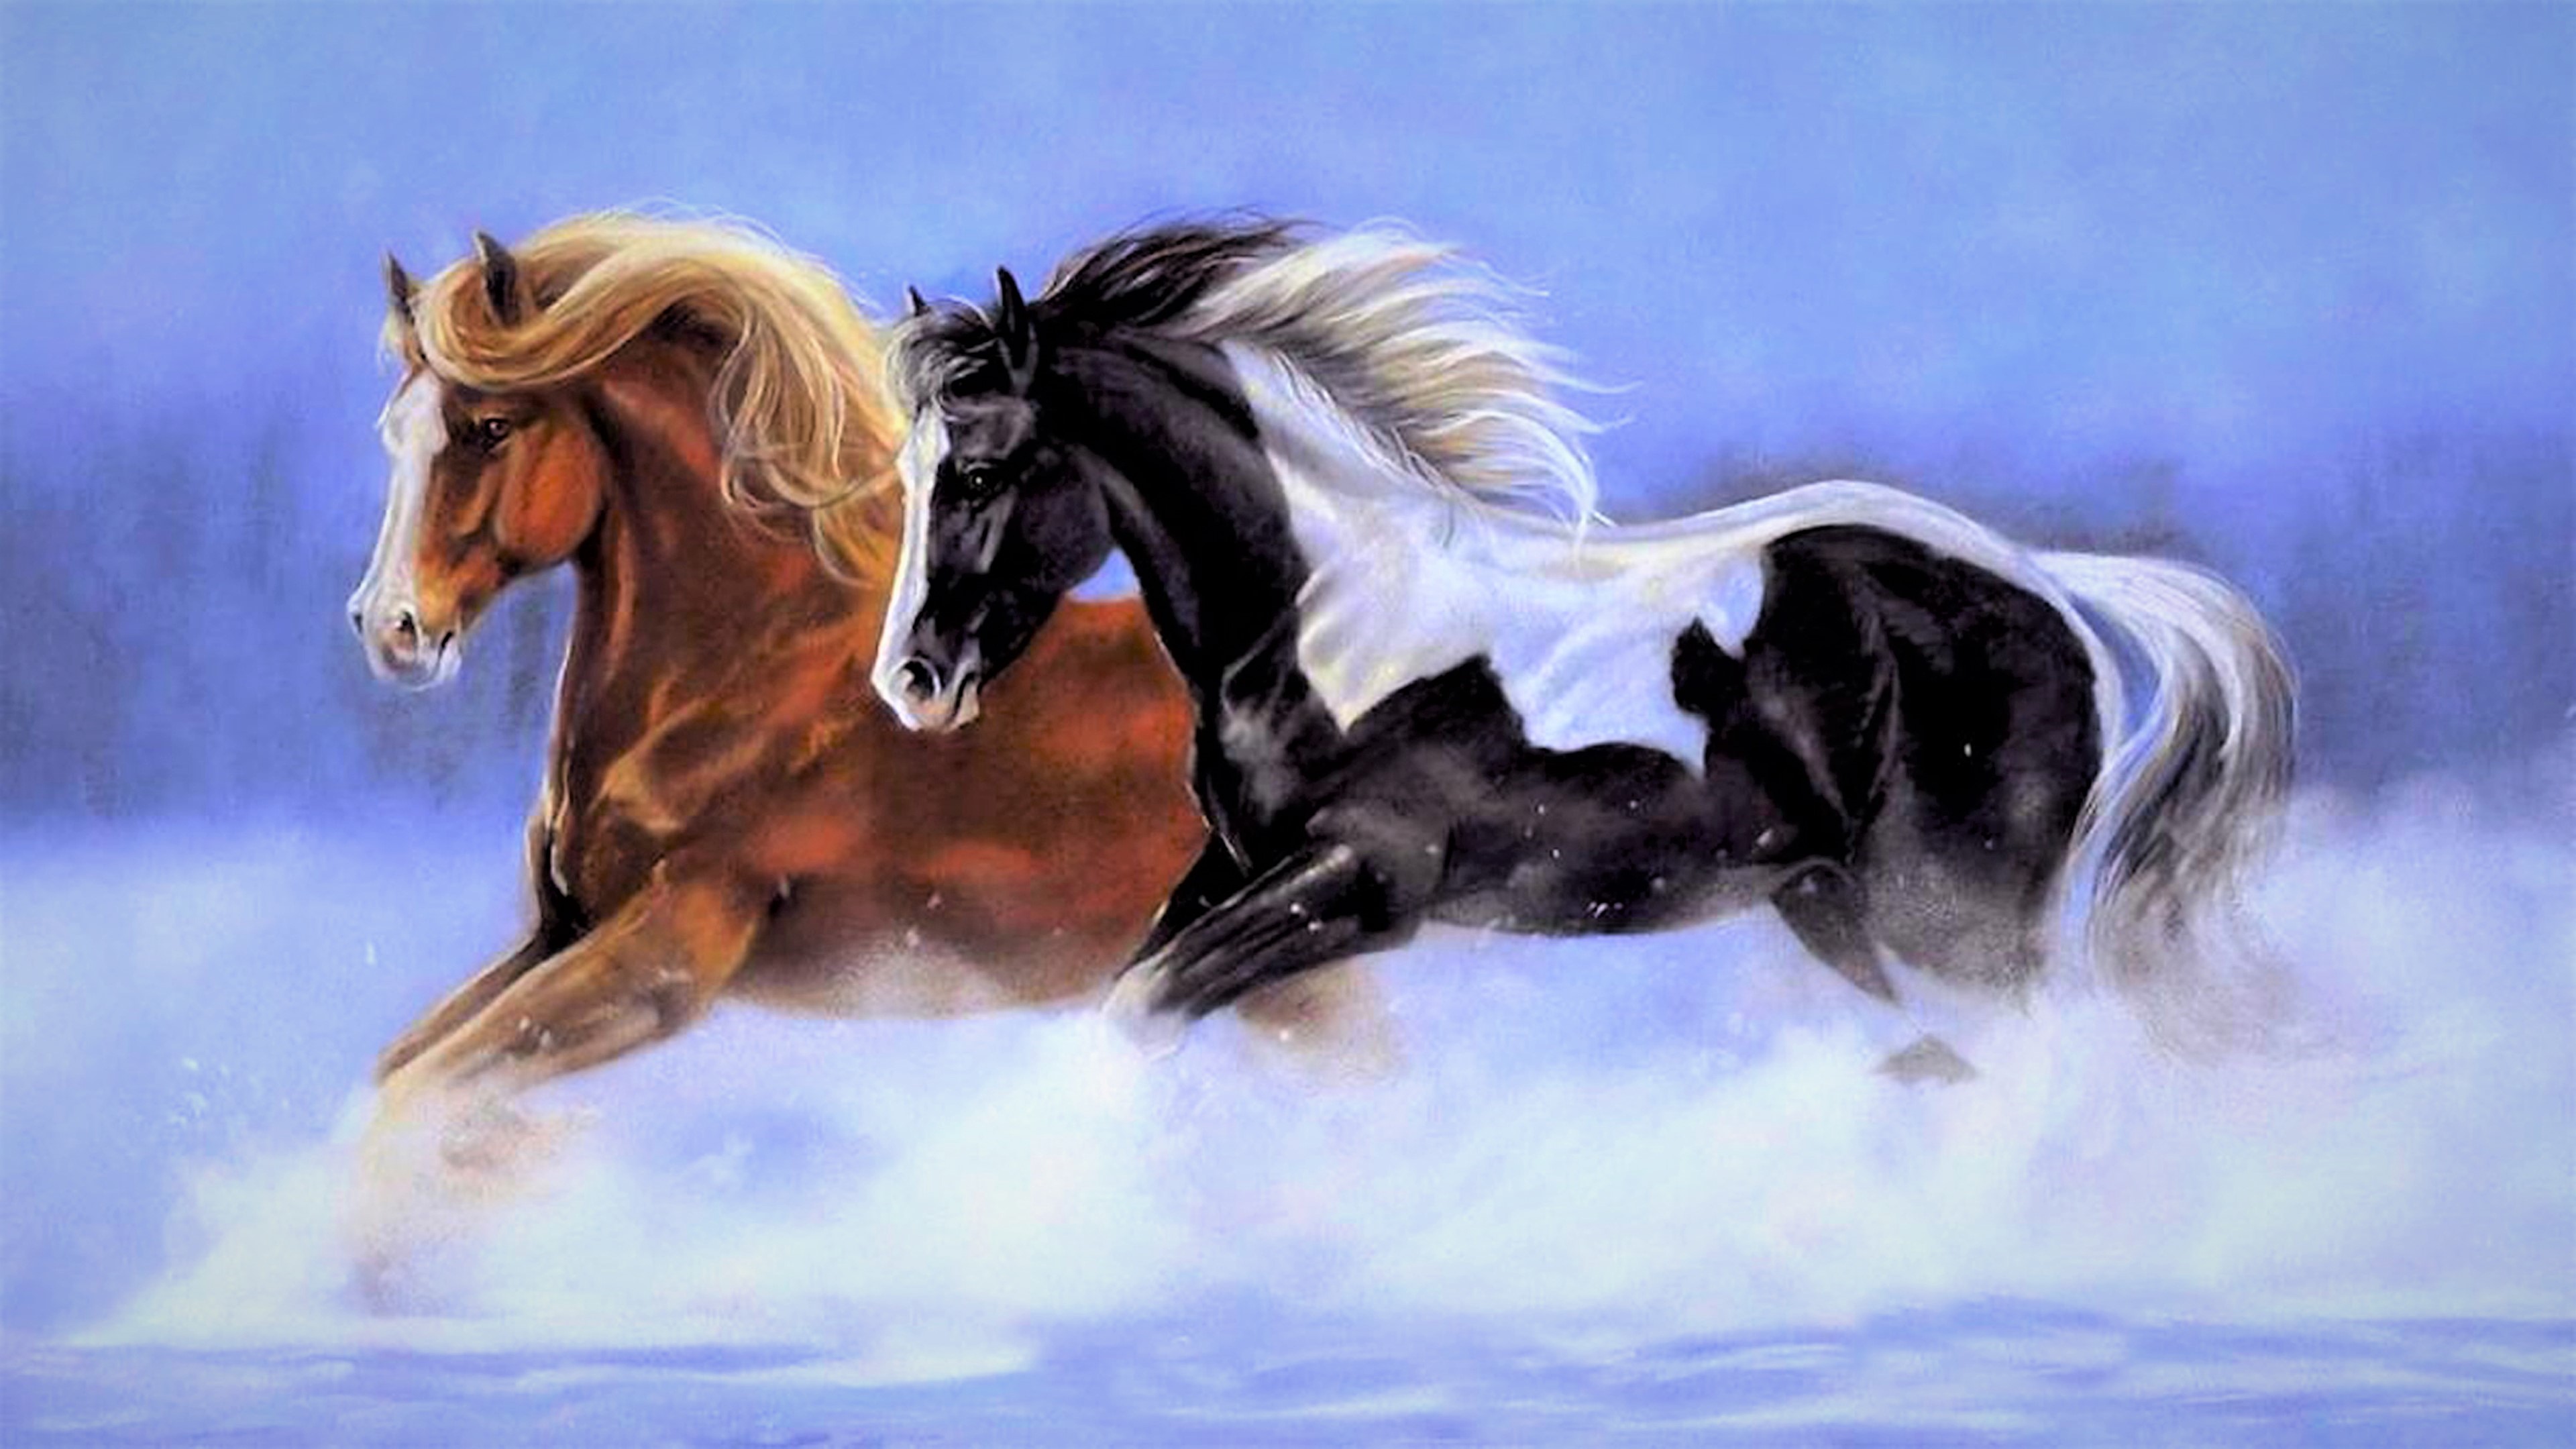 Скачать обои бесплатно Лошадь, Картина, Бег, Художественные картинка на рабочий стол ПК